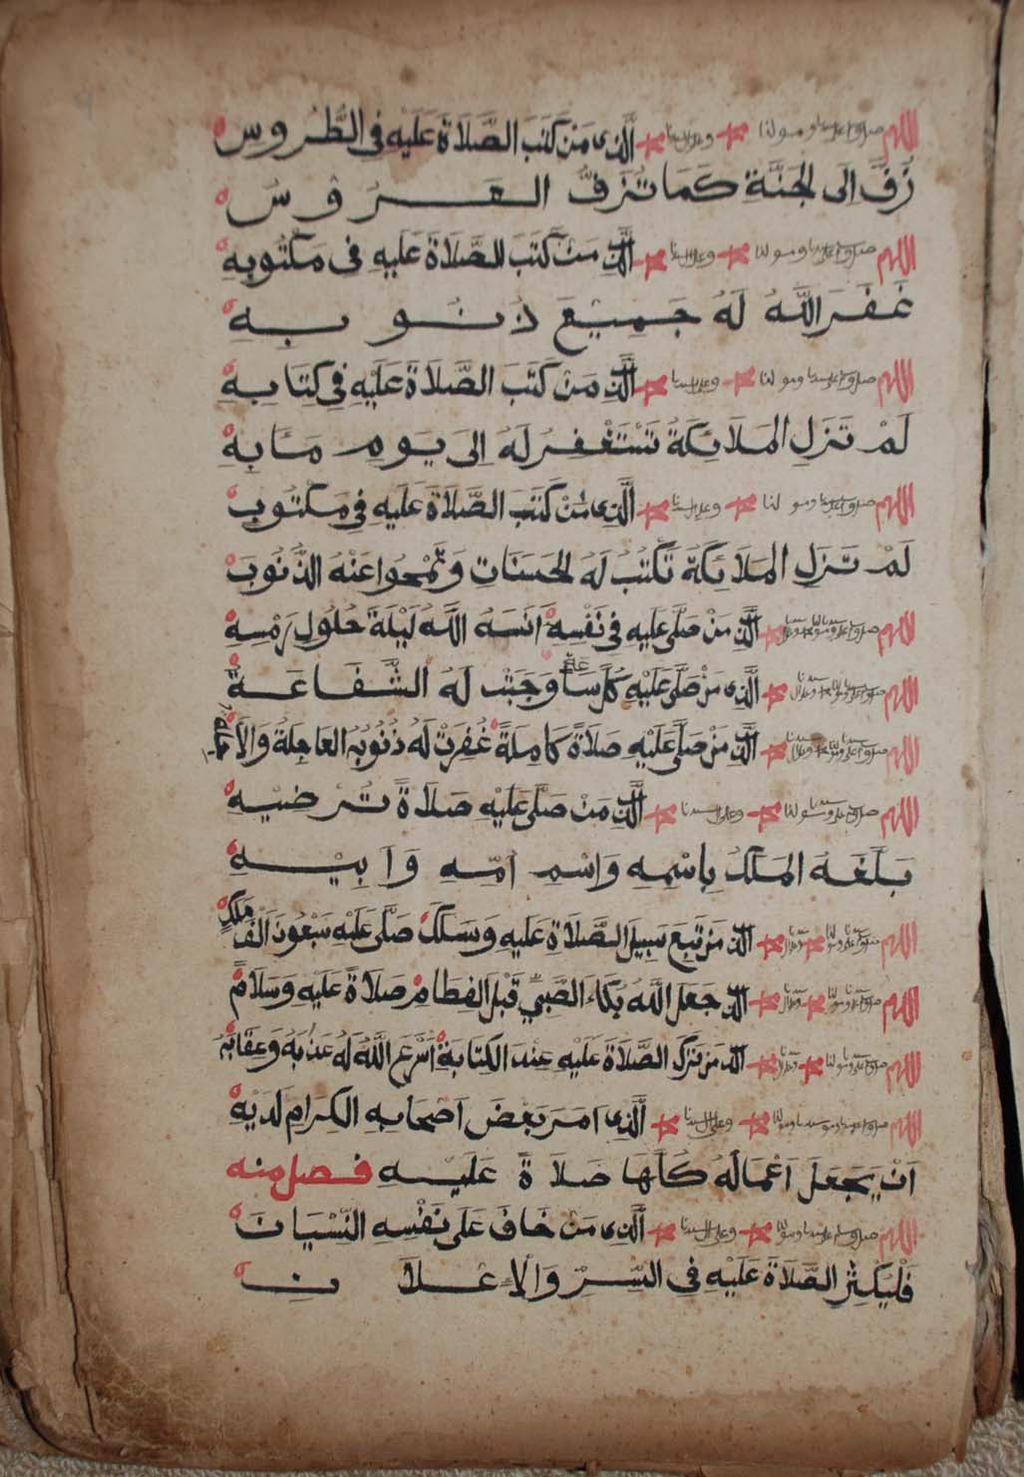 prayer book by ʿAbd al-ǧalīl b. Muḥammad b. Aḥmad b. ʿAẓẓūm al-murādī al-qayrawānī. (W.